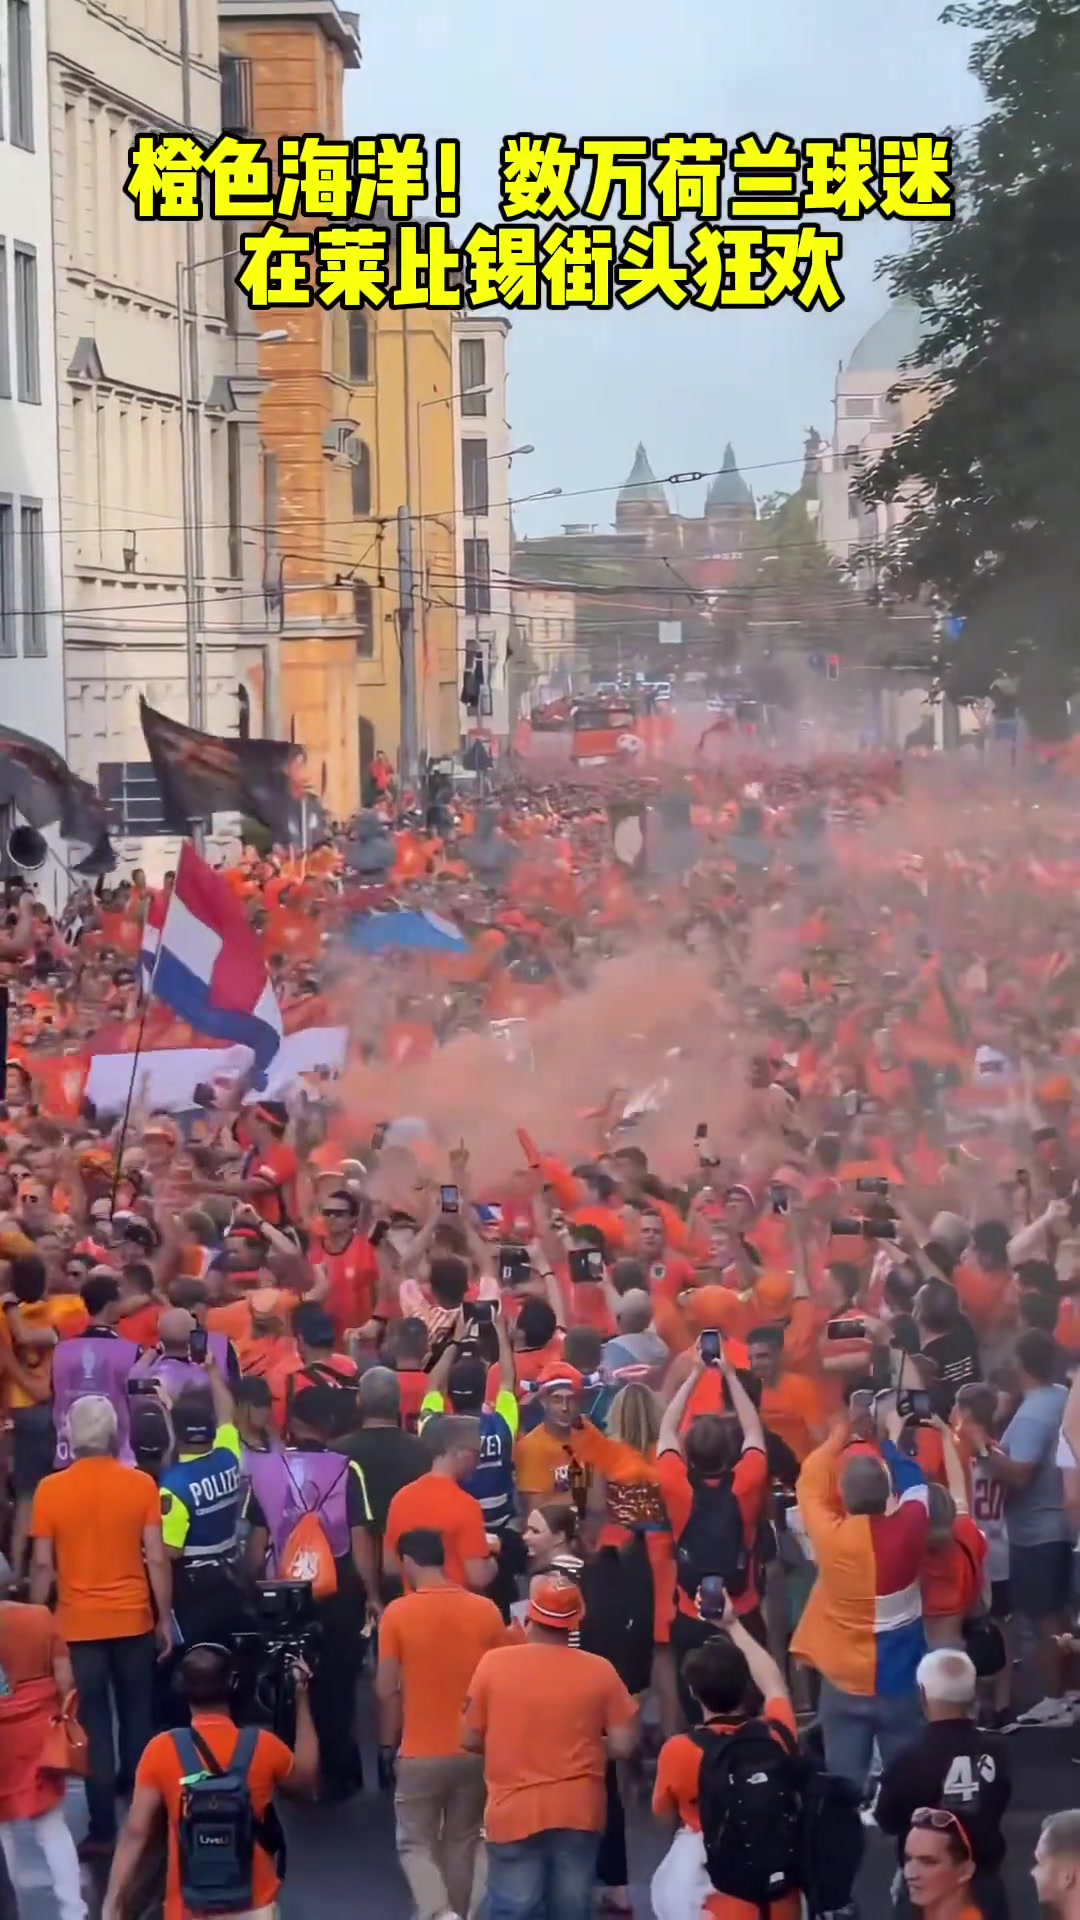  橙色海洋！数万荷兰球迷在莱比锡街头狂欢！